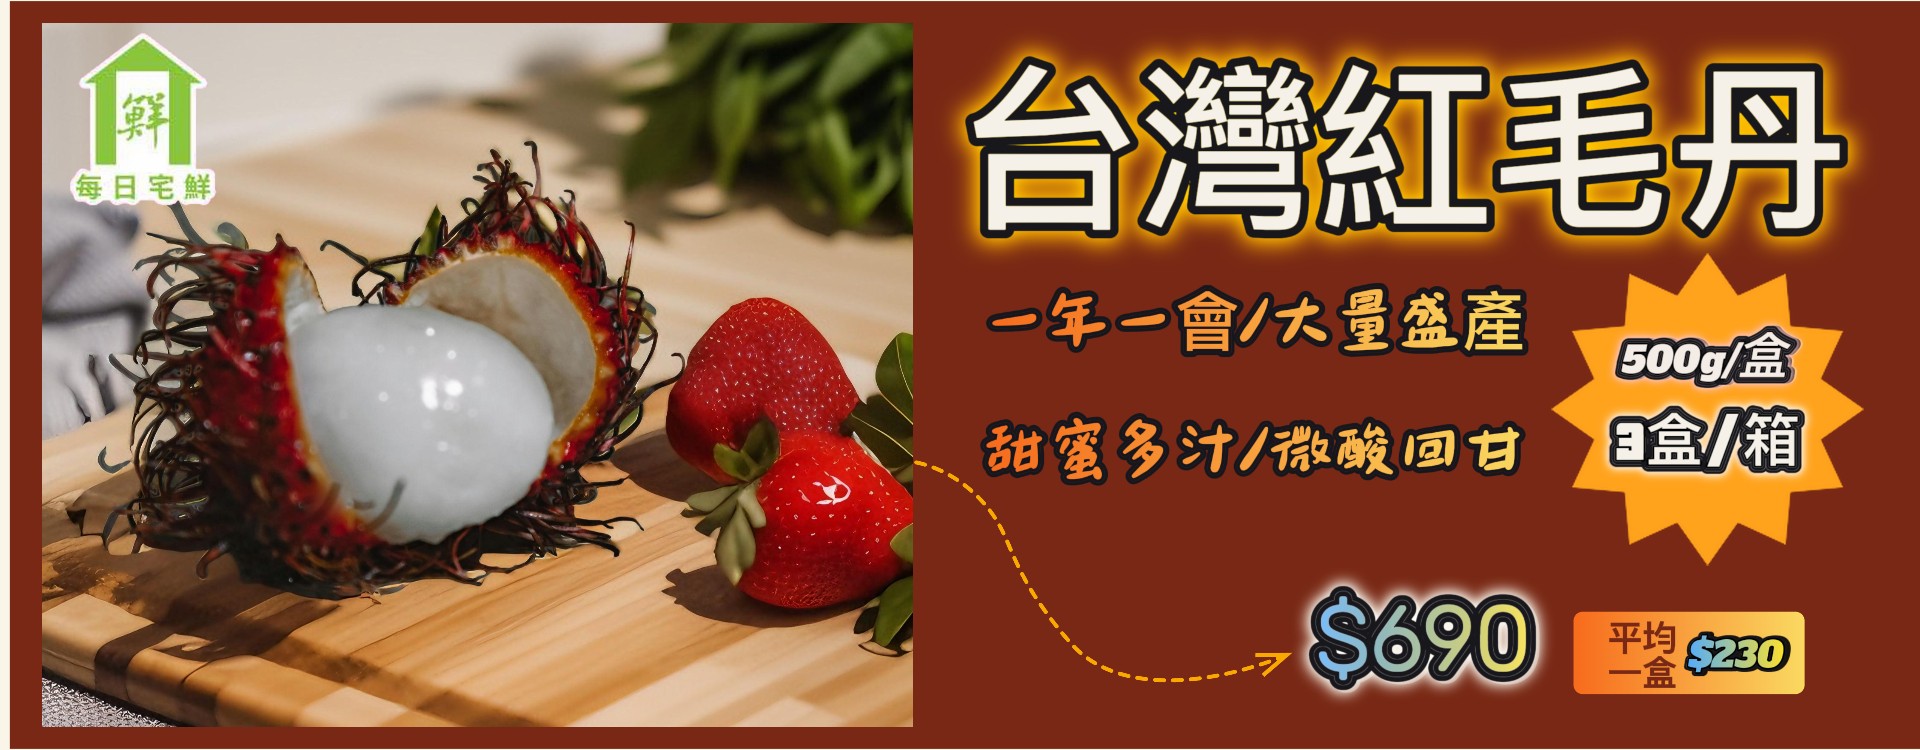 任選$699免費新品上市-臺灣50年水果蔬果專家 | 優質蔬果、水果禮盒、當季水果推薦